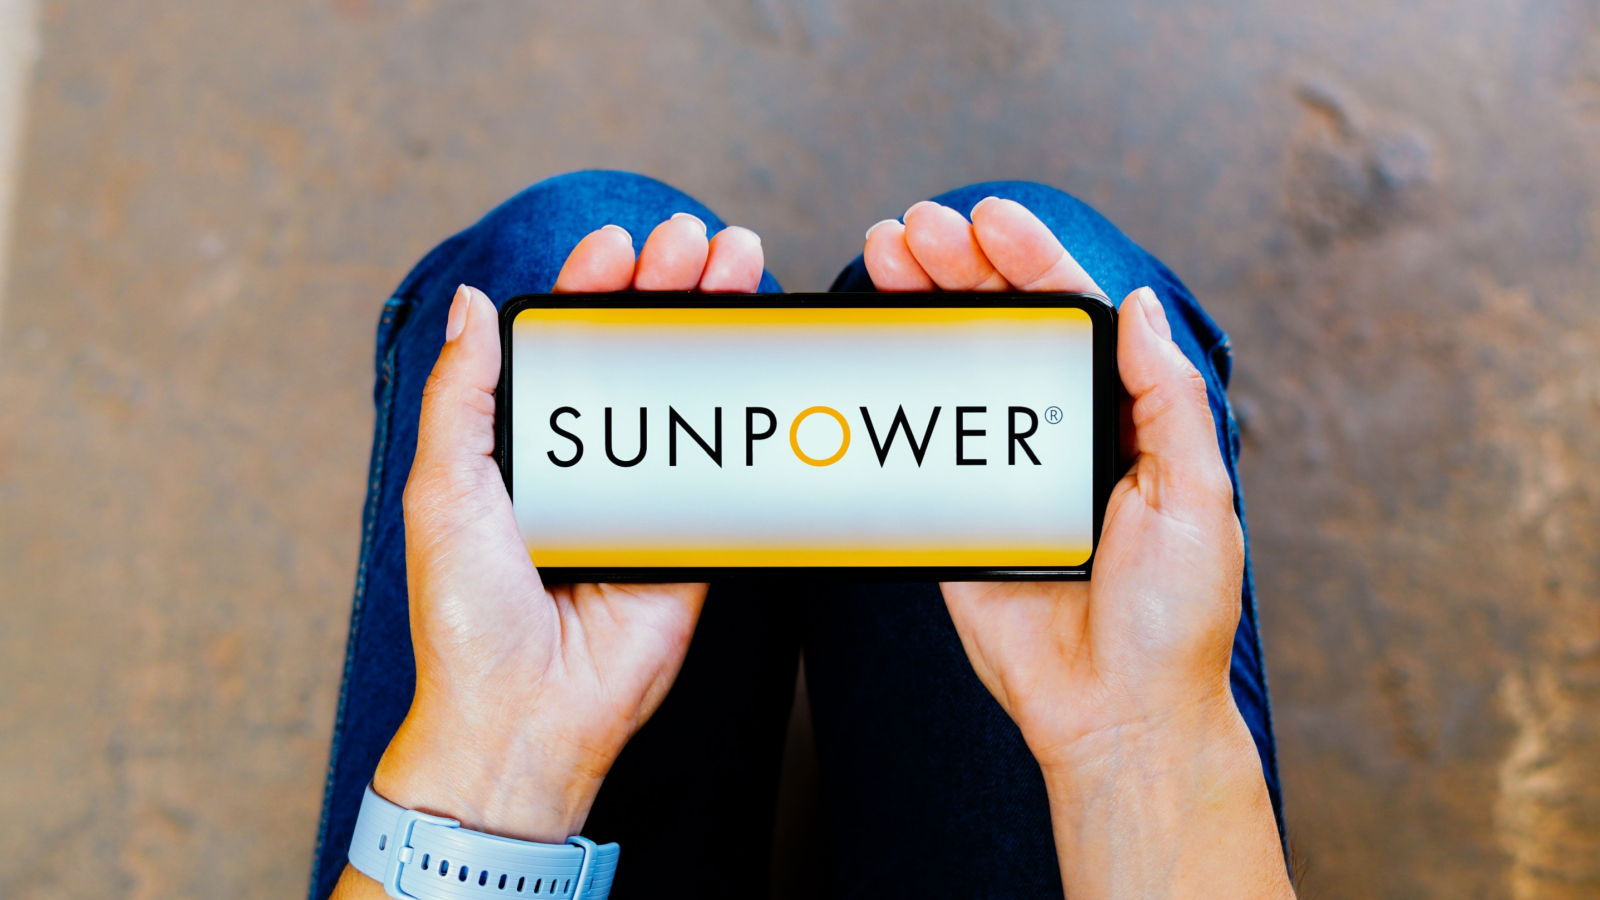 SunPower (SPWR) Stock Shines as Winner of New Meme Stocks Rally